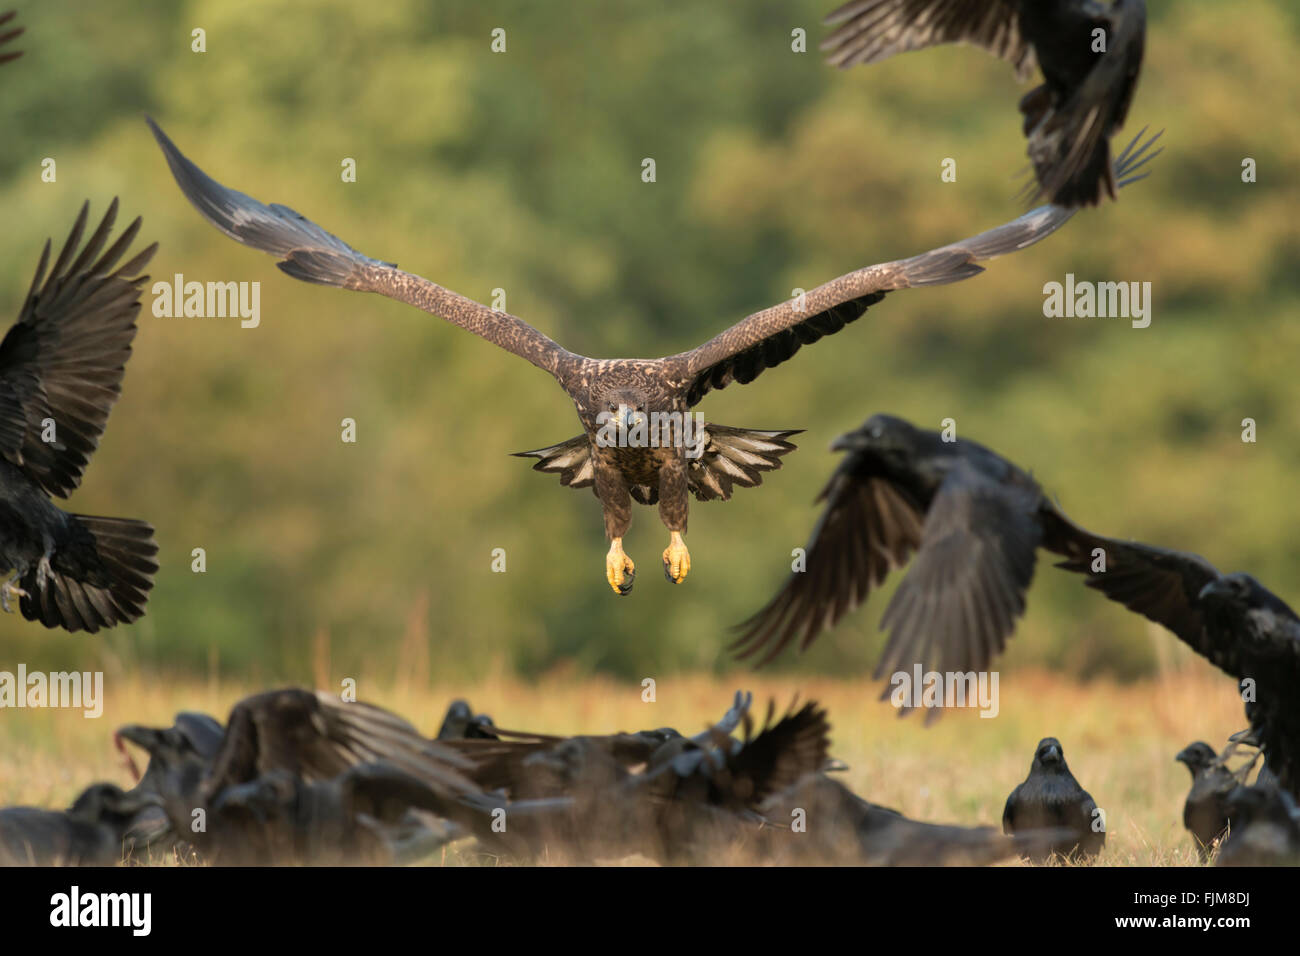 Pigargo ( Haliaeetus albicilla ), subadulto, persecuciones Norte de Cuervos, alimentos competidores, alimentador oportunista. Foto de stock